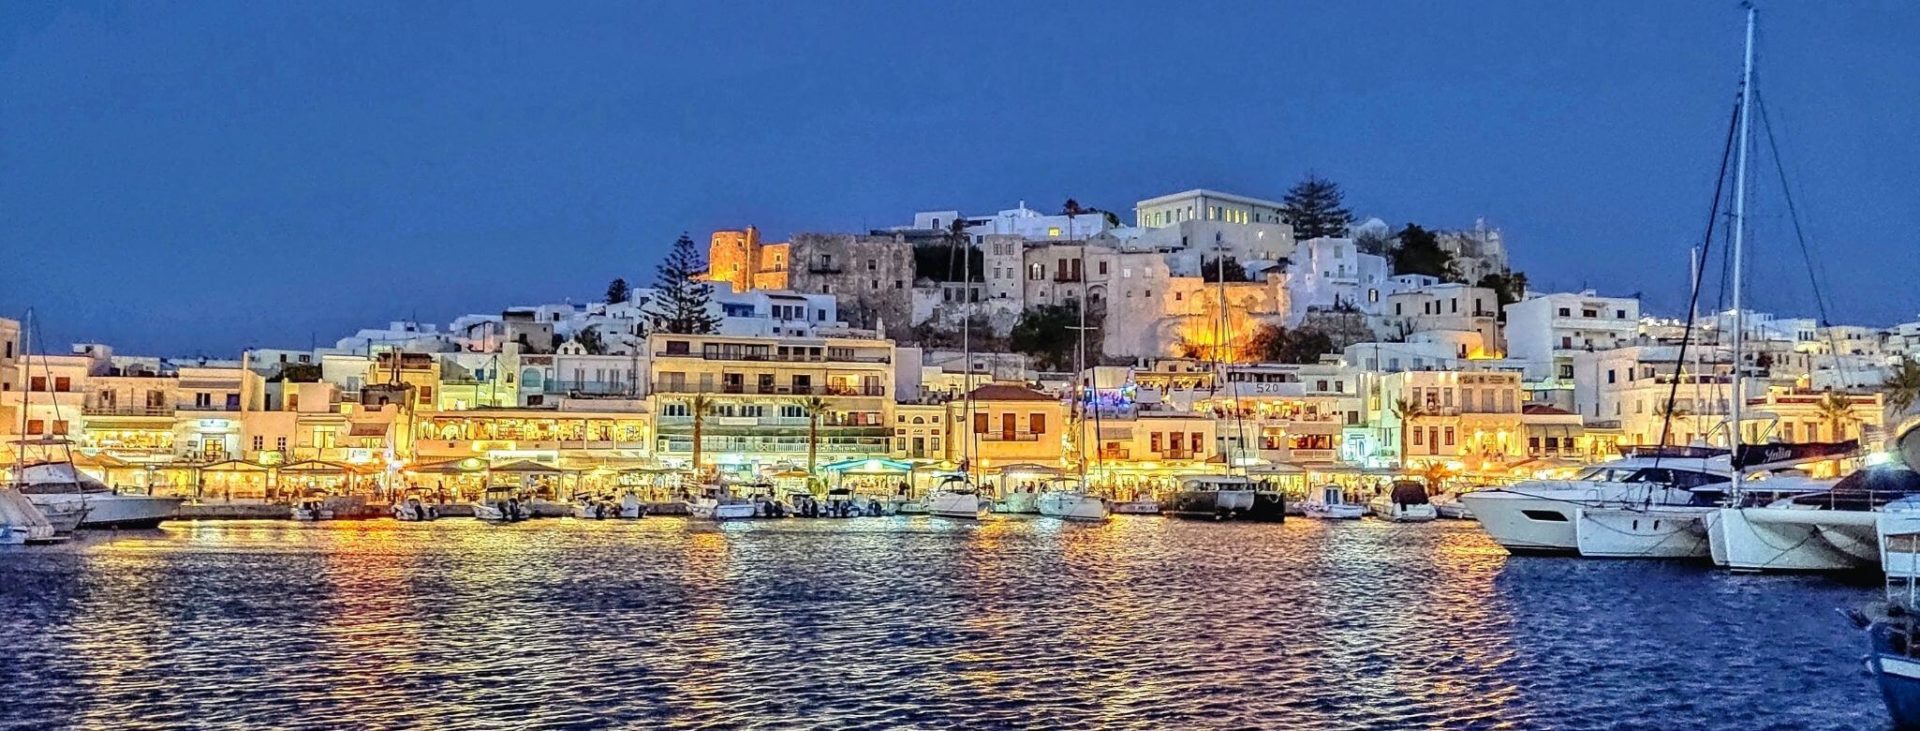 Ein Dorf auf einer griechischen Insel